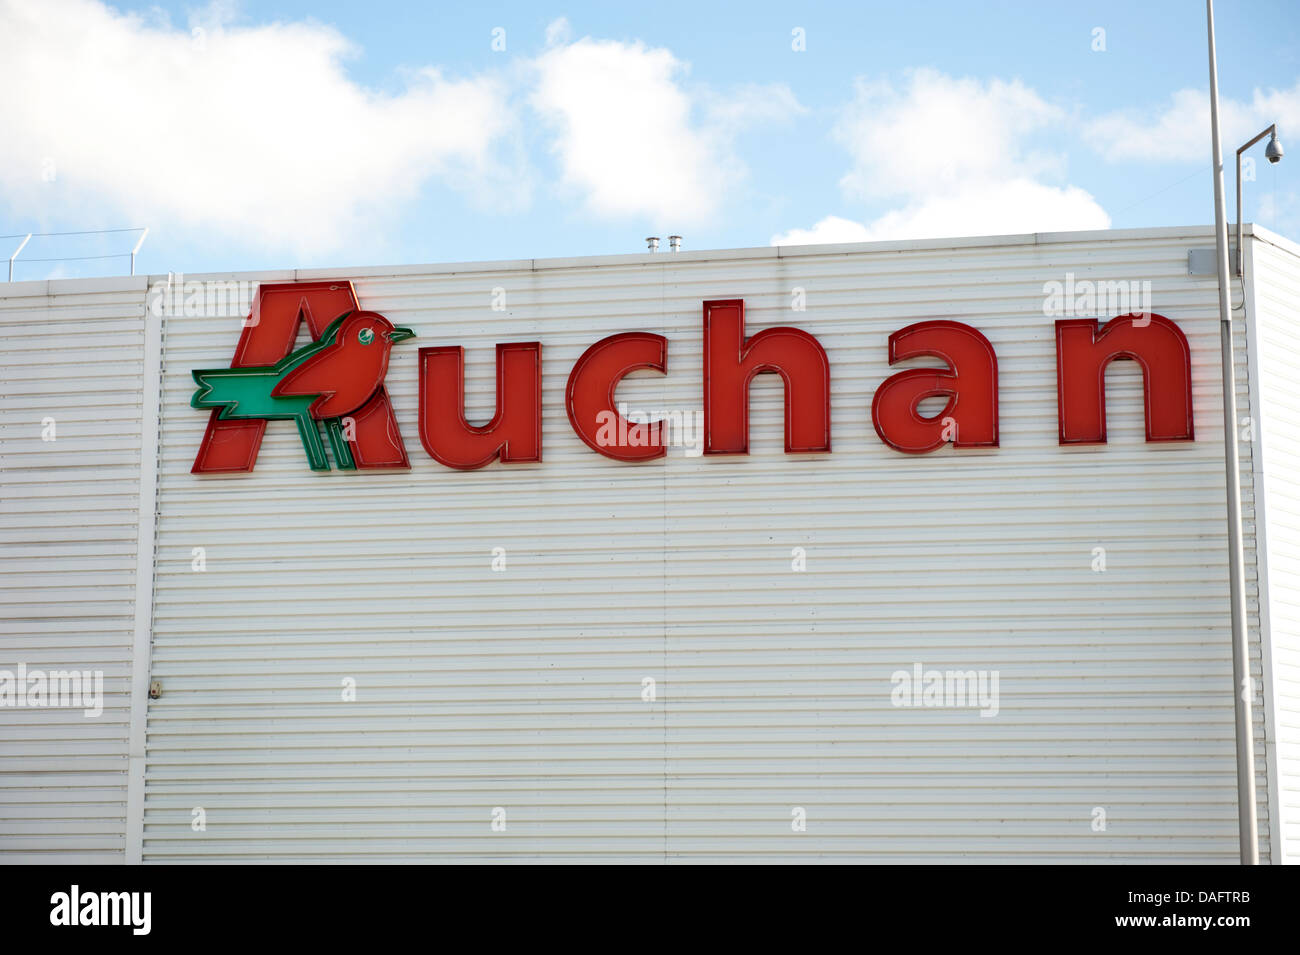 🧸 Offre VTECH 🧸 🎅🏼 Au rayon - Auchan Hypermarché Calais